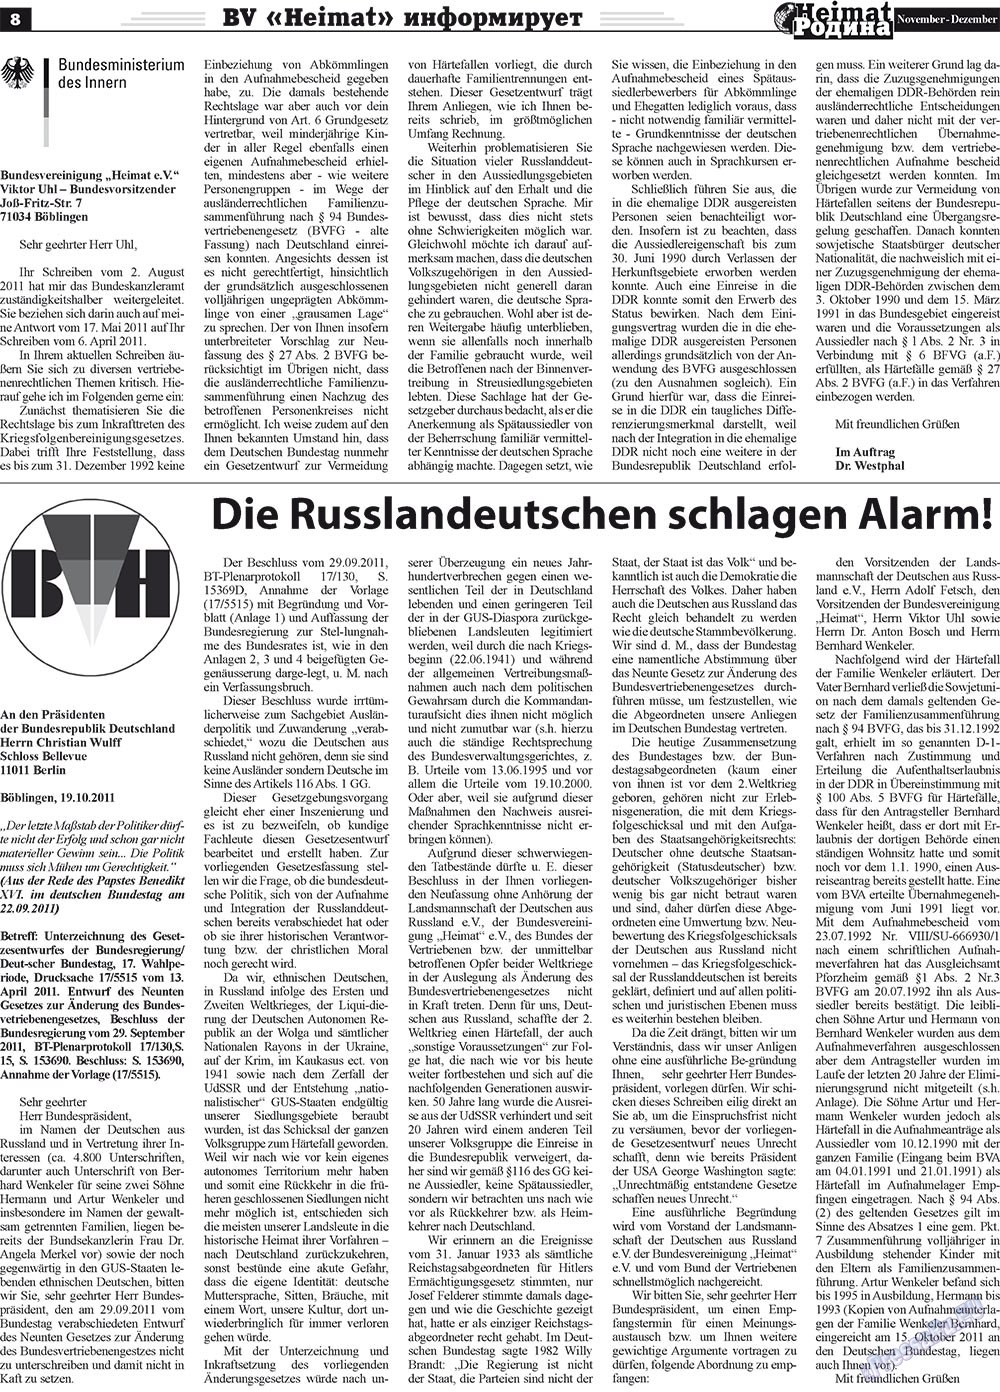 Heimat-Родина (Zeitung). 2011 Jahr, Ausgabe 11, Seite 8